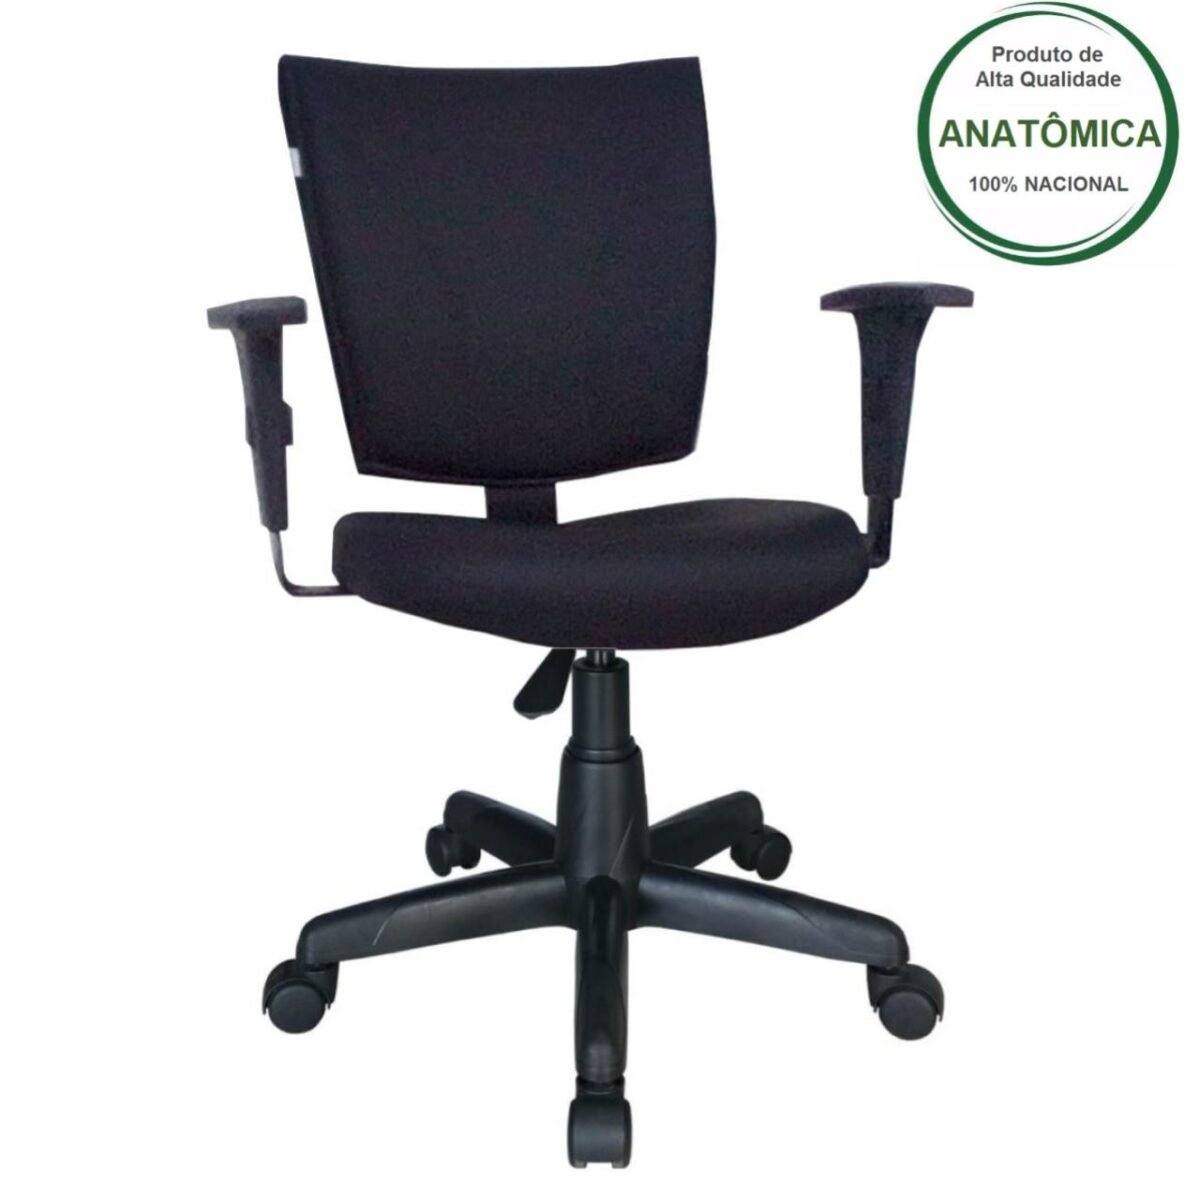 Cadeira B-ONE Giratória com Braços Reguláveis – Cor Preta – MARTIFLEX - 2